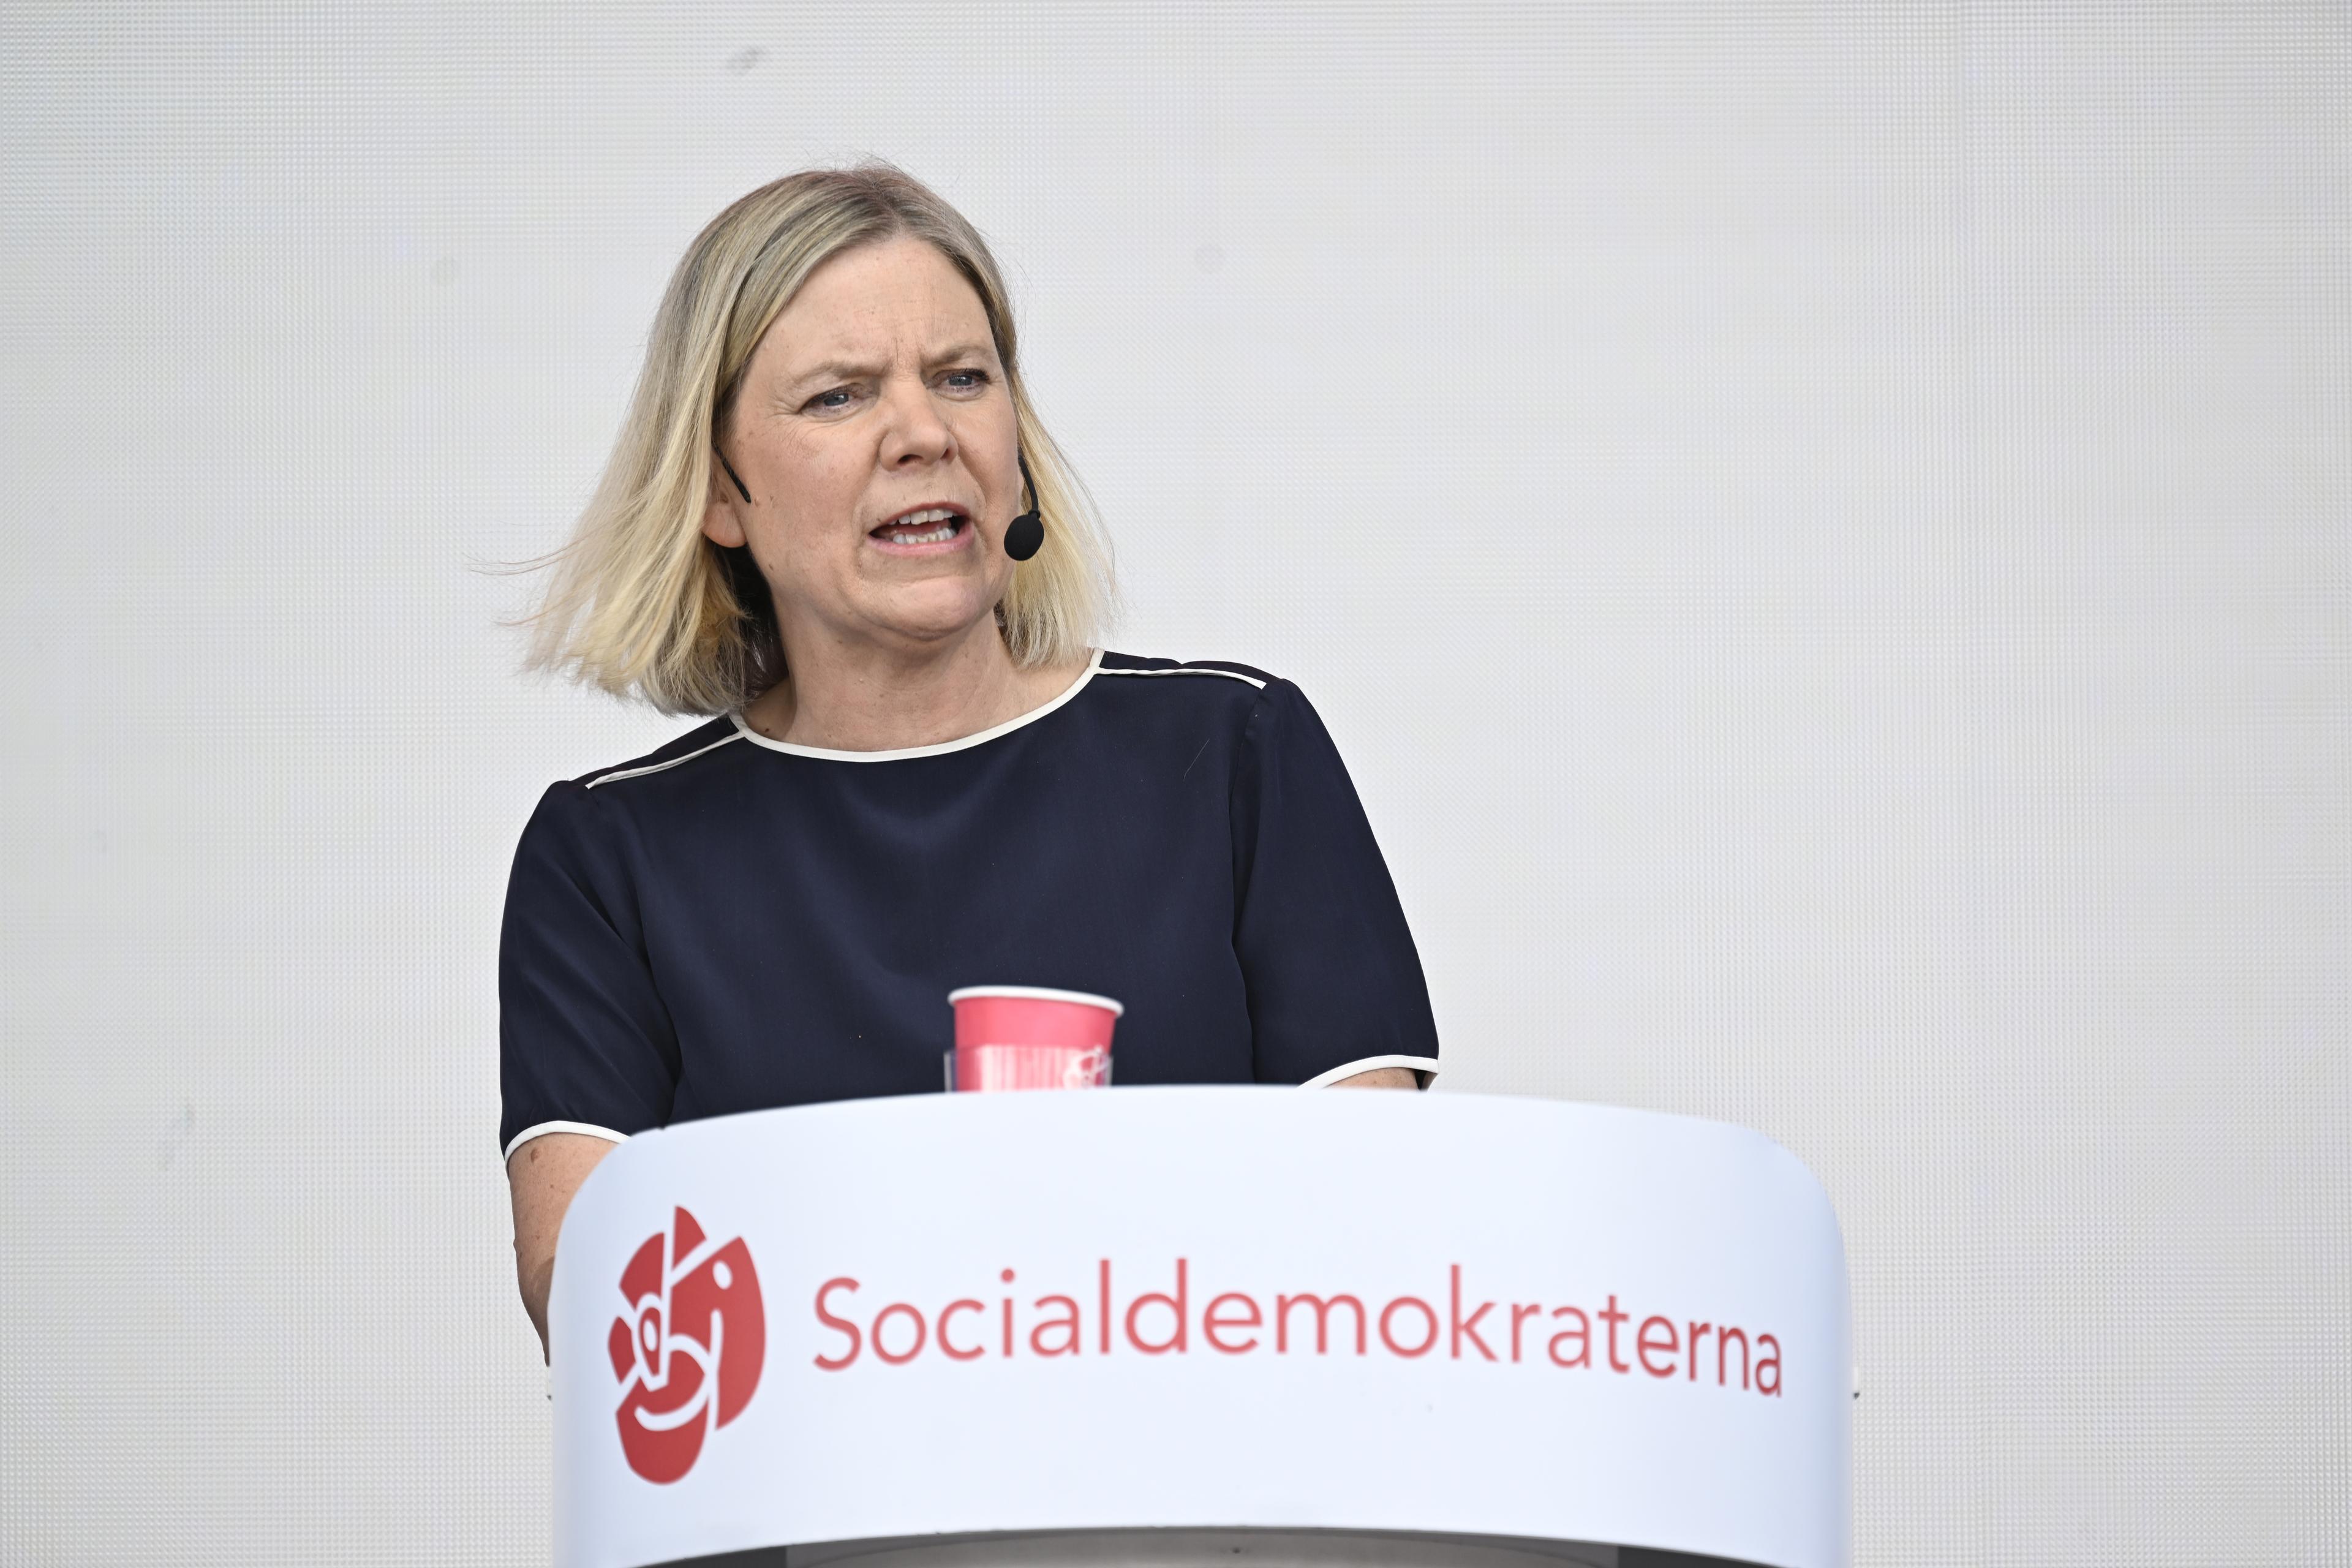 Socialdemokraternas partiledare Magdalena Andersson under Järvaveckan. Arkivbild. Foto: Pontus Lundahl/TT